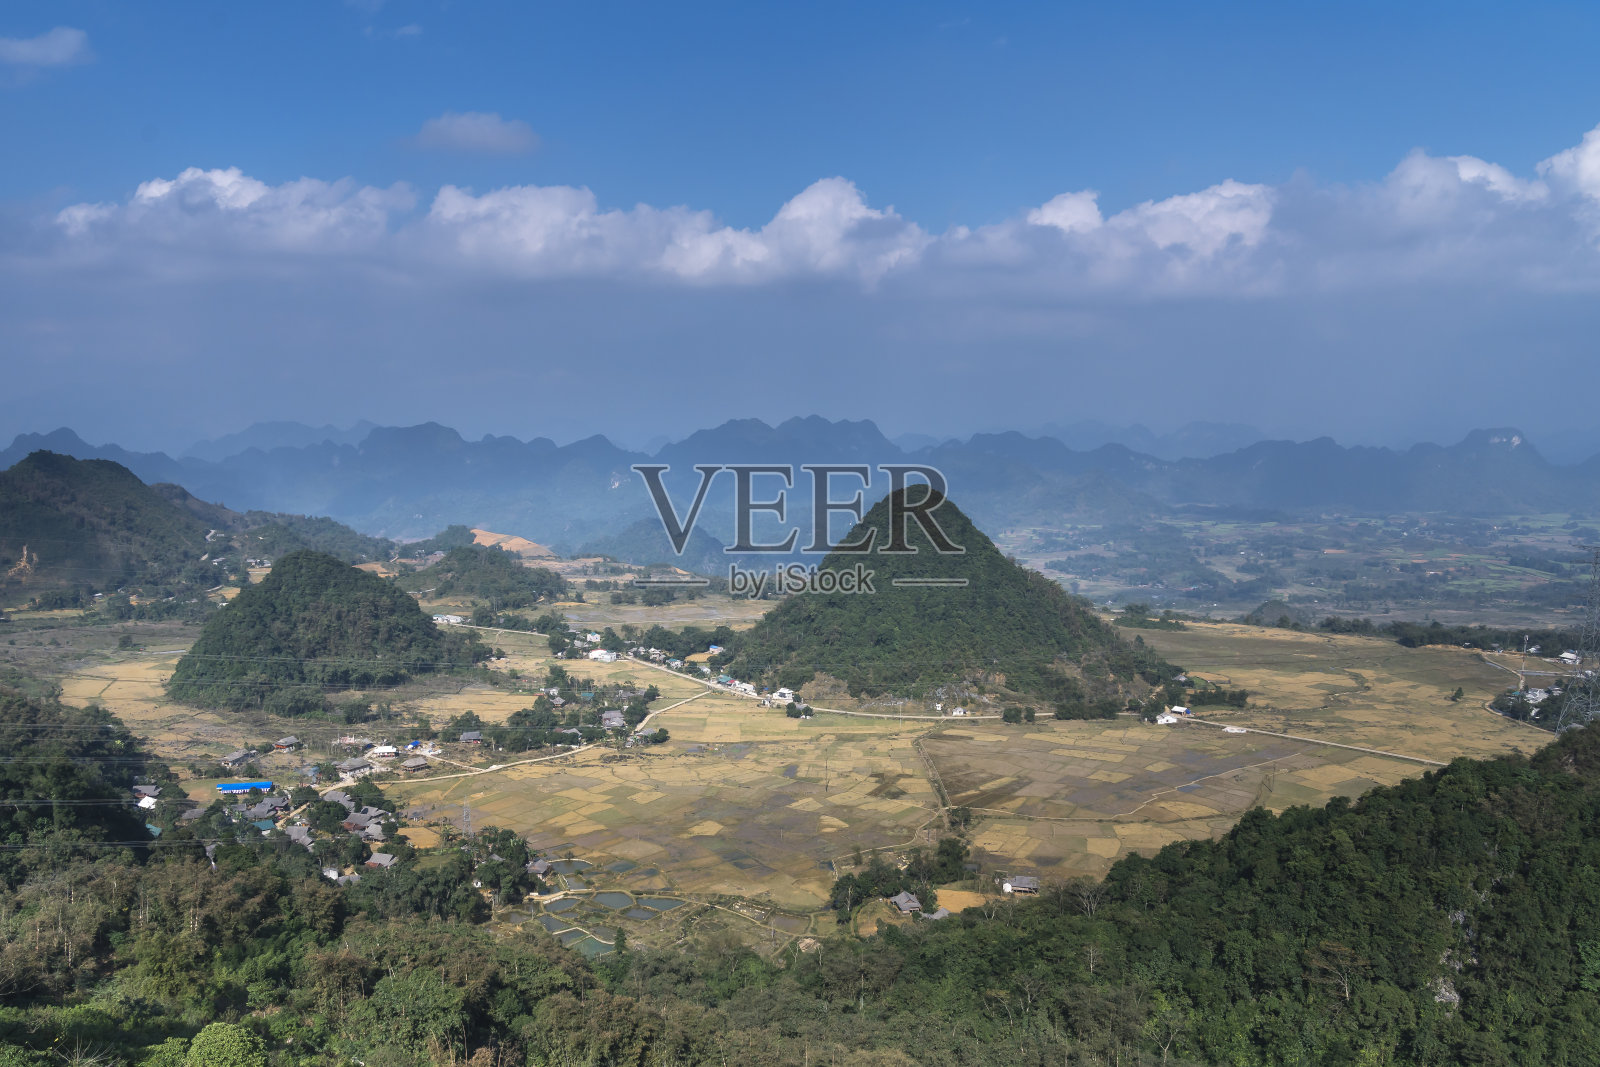 越南河江省全坝区谭臣镇的美景。房子旁边是五颜六色的稻田照片摄影图片